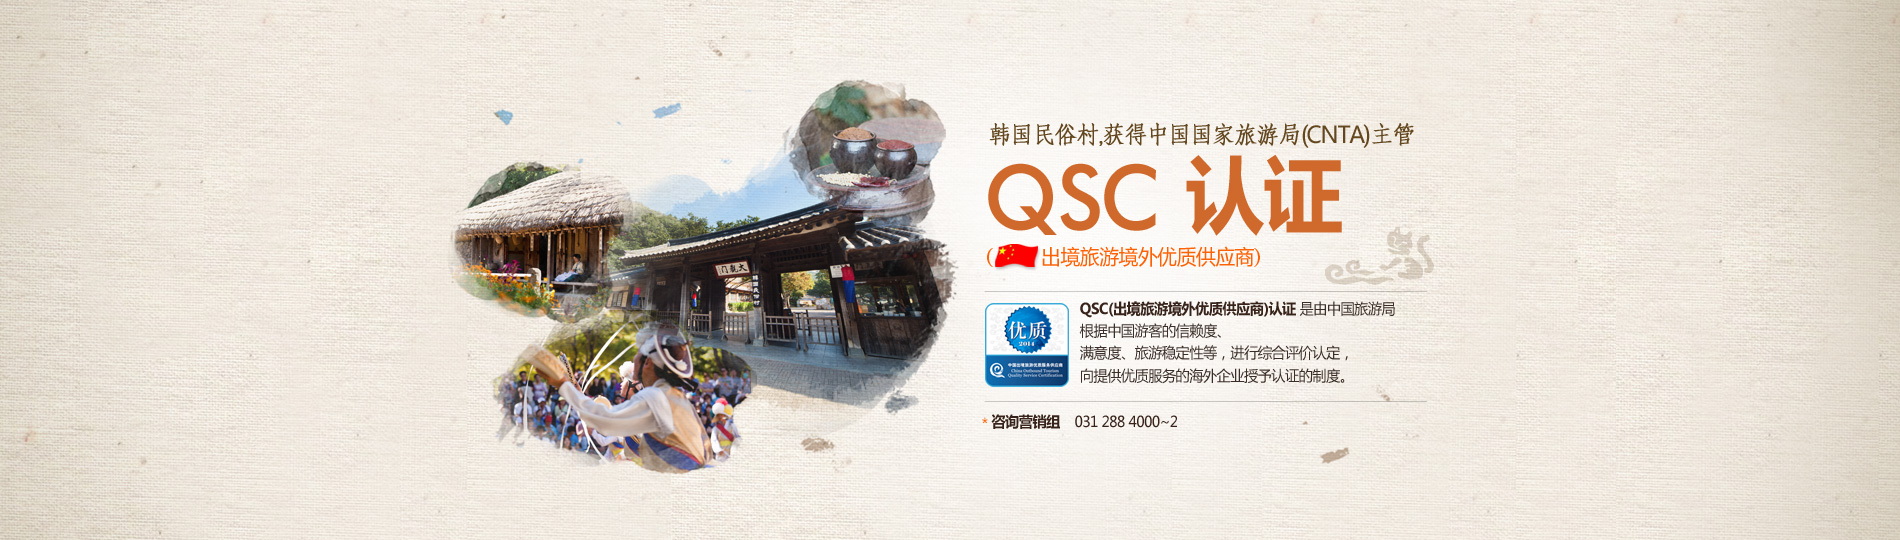 중국관광청 QSC